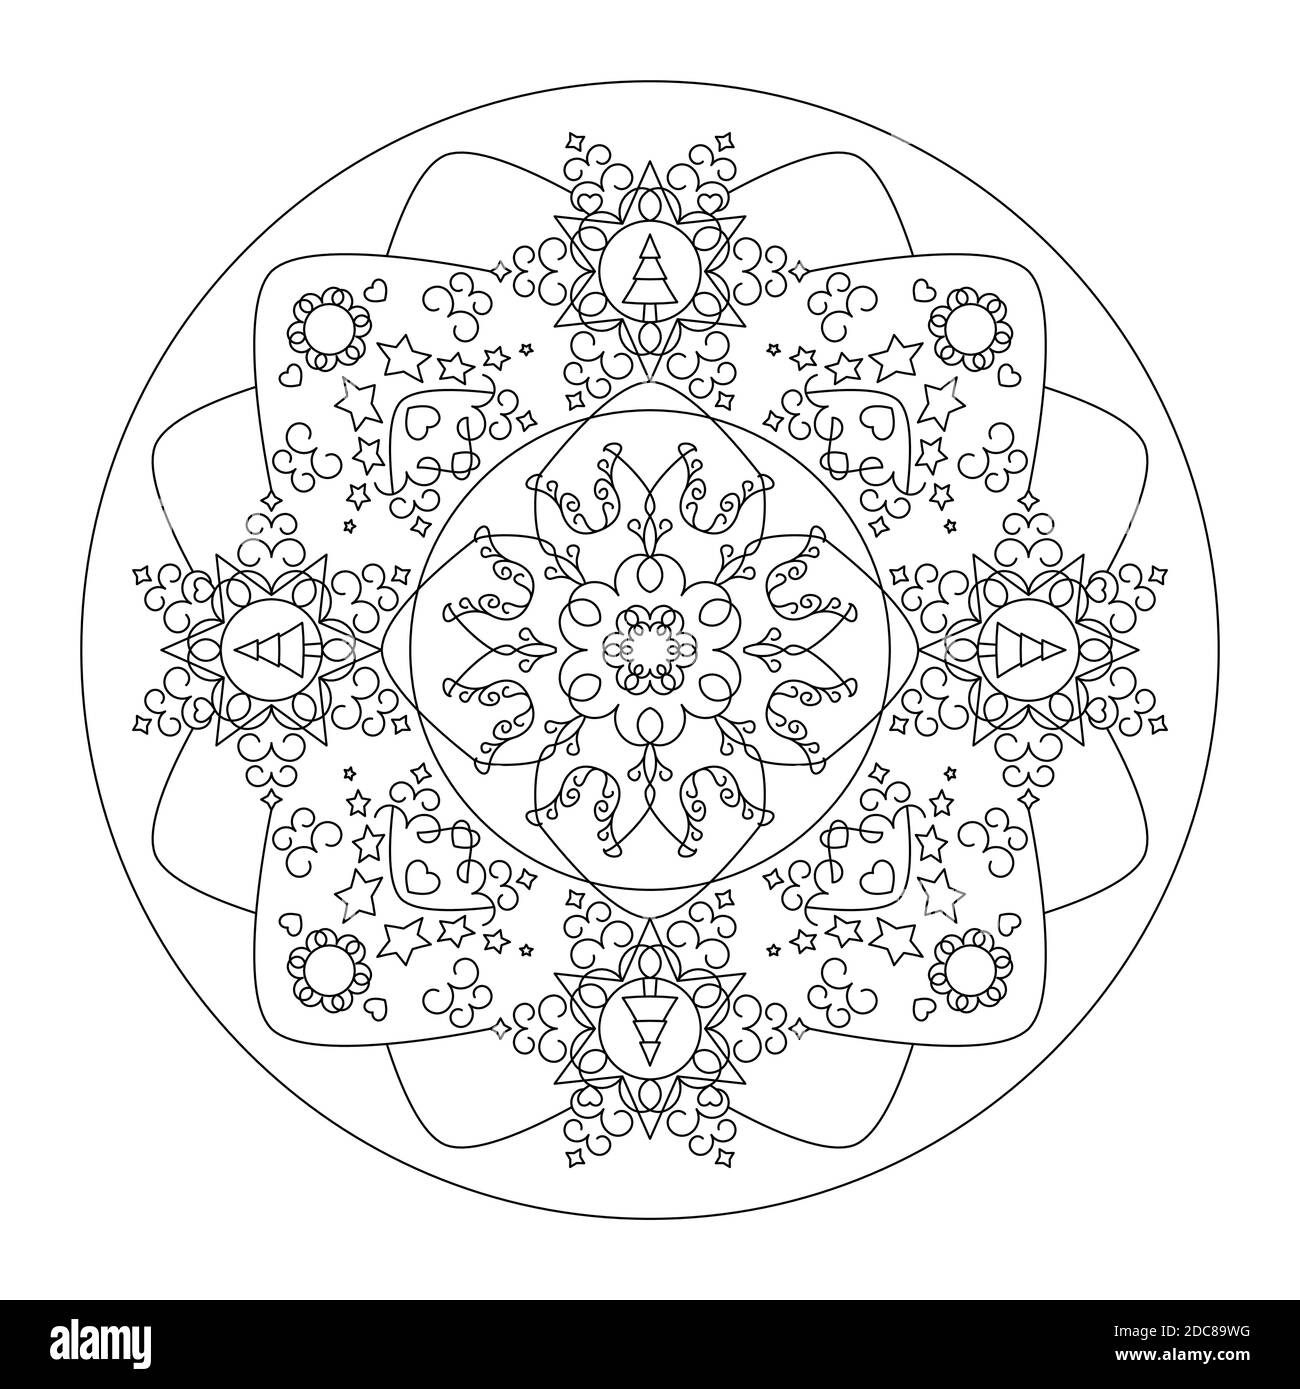 Weihnachts-Mandala. Malseite. Schöner Weihnachtsbaum, Stern und Herz. Schwarz und Weiß. Vektorgrafik. Stock Vektor